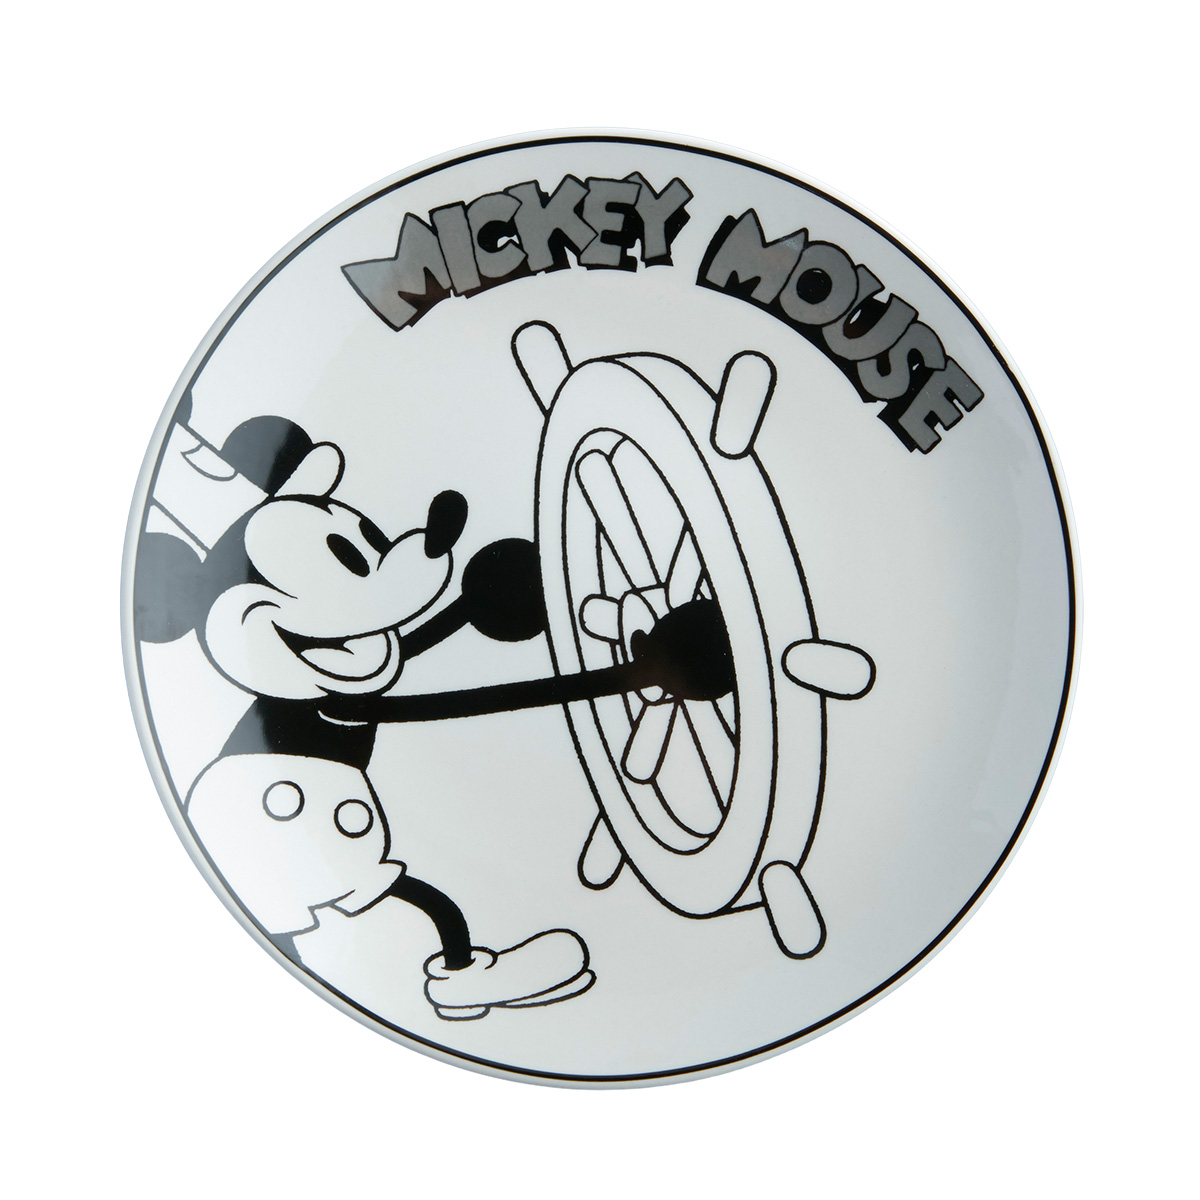 Corona lanza una nueva edición de vajilla diseñada con Minney y Mickey Mouse